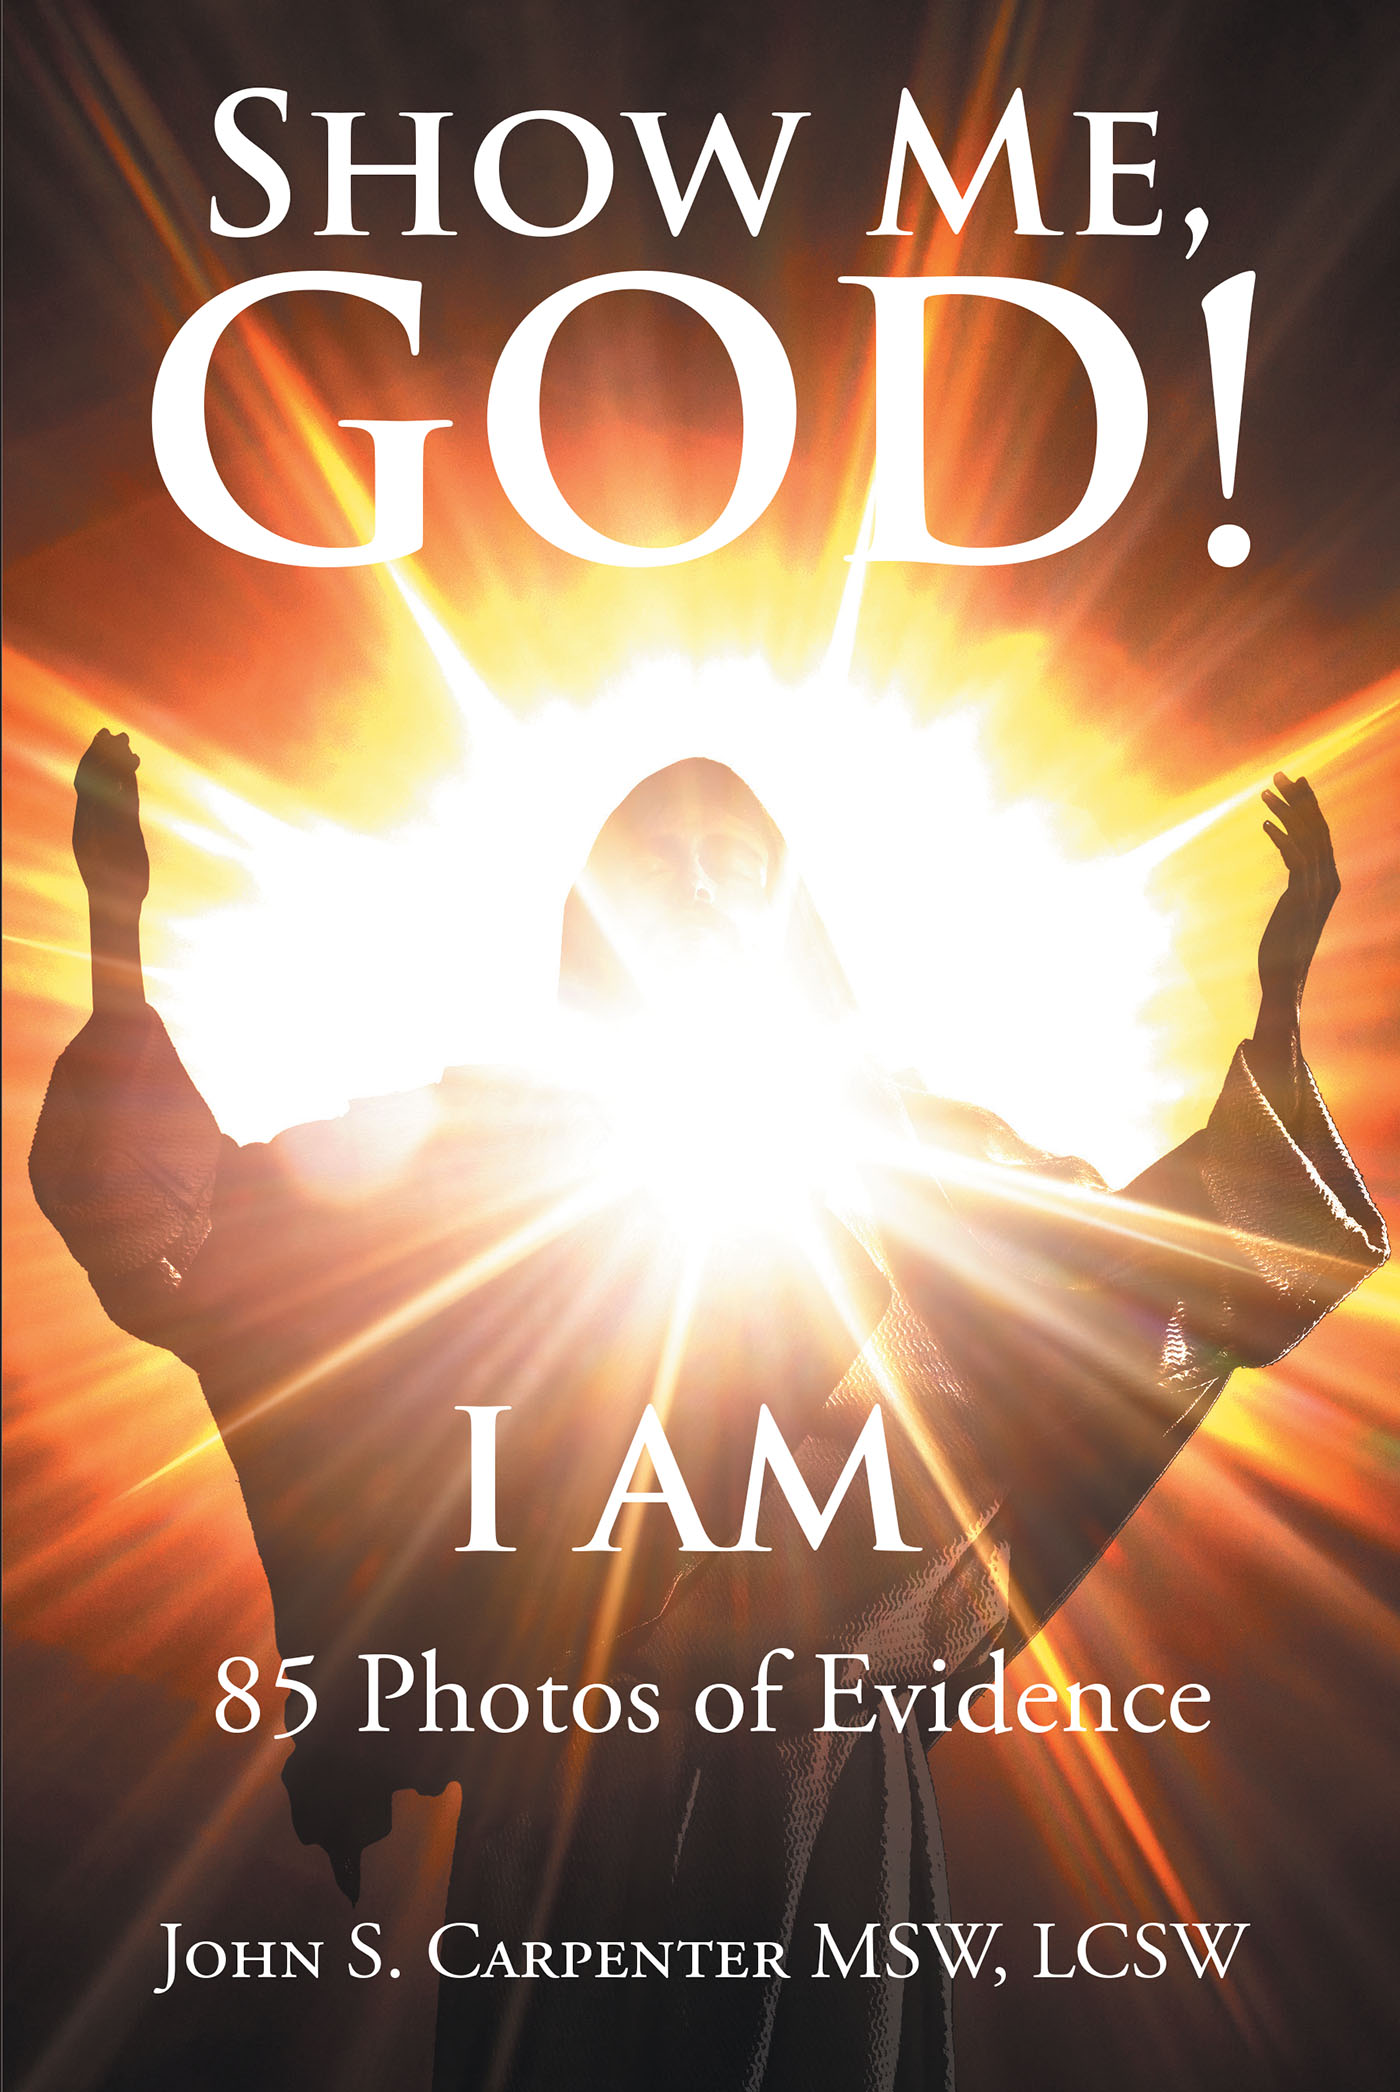 Show Me, God! I AM Cover Image